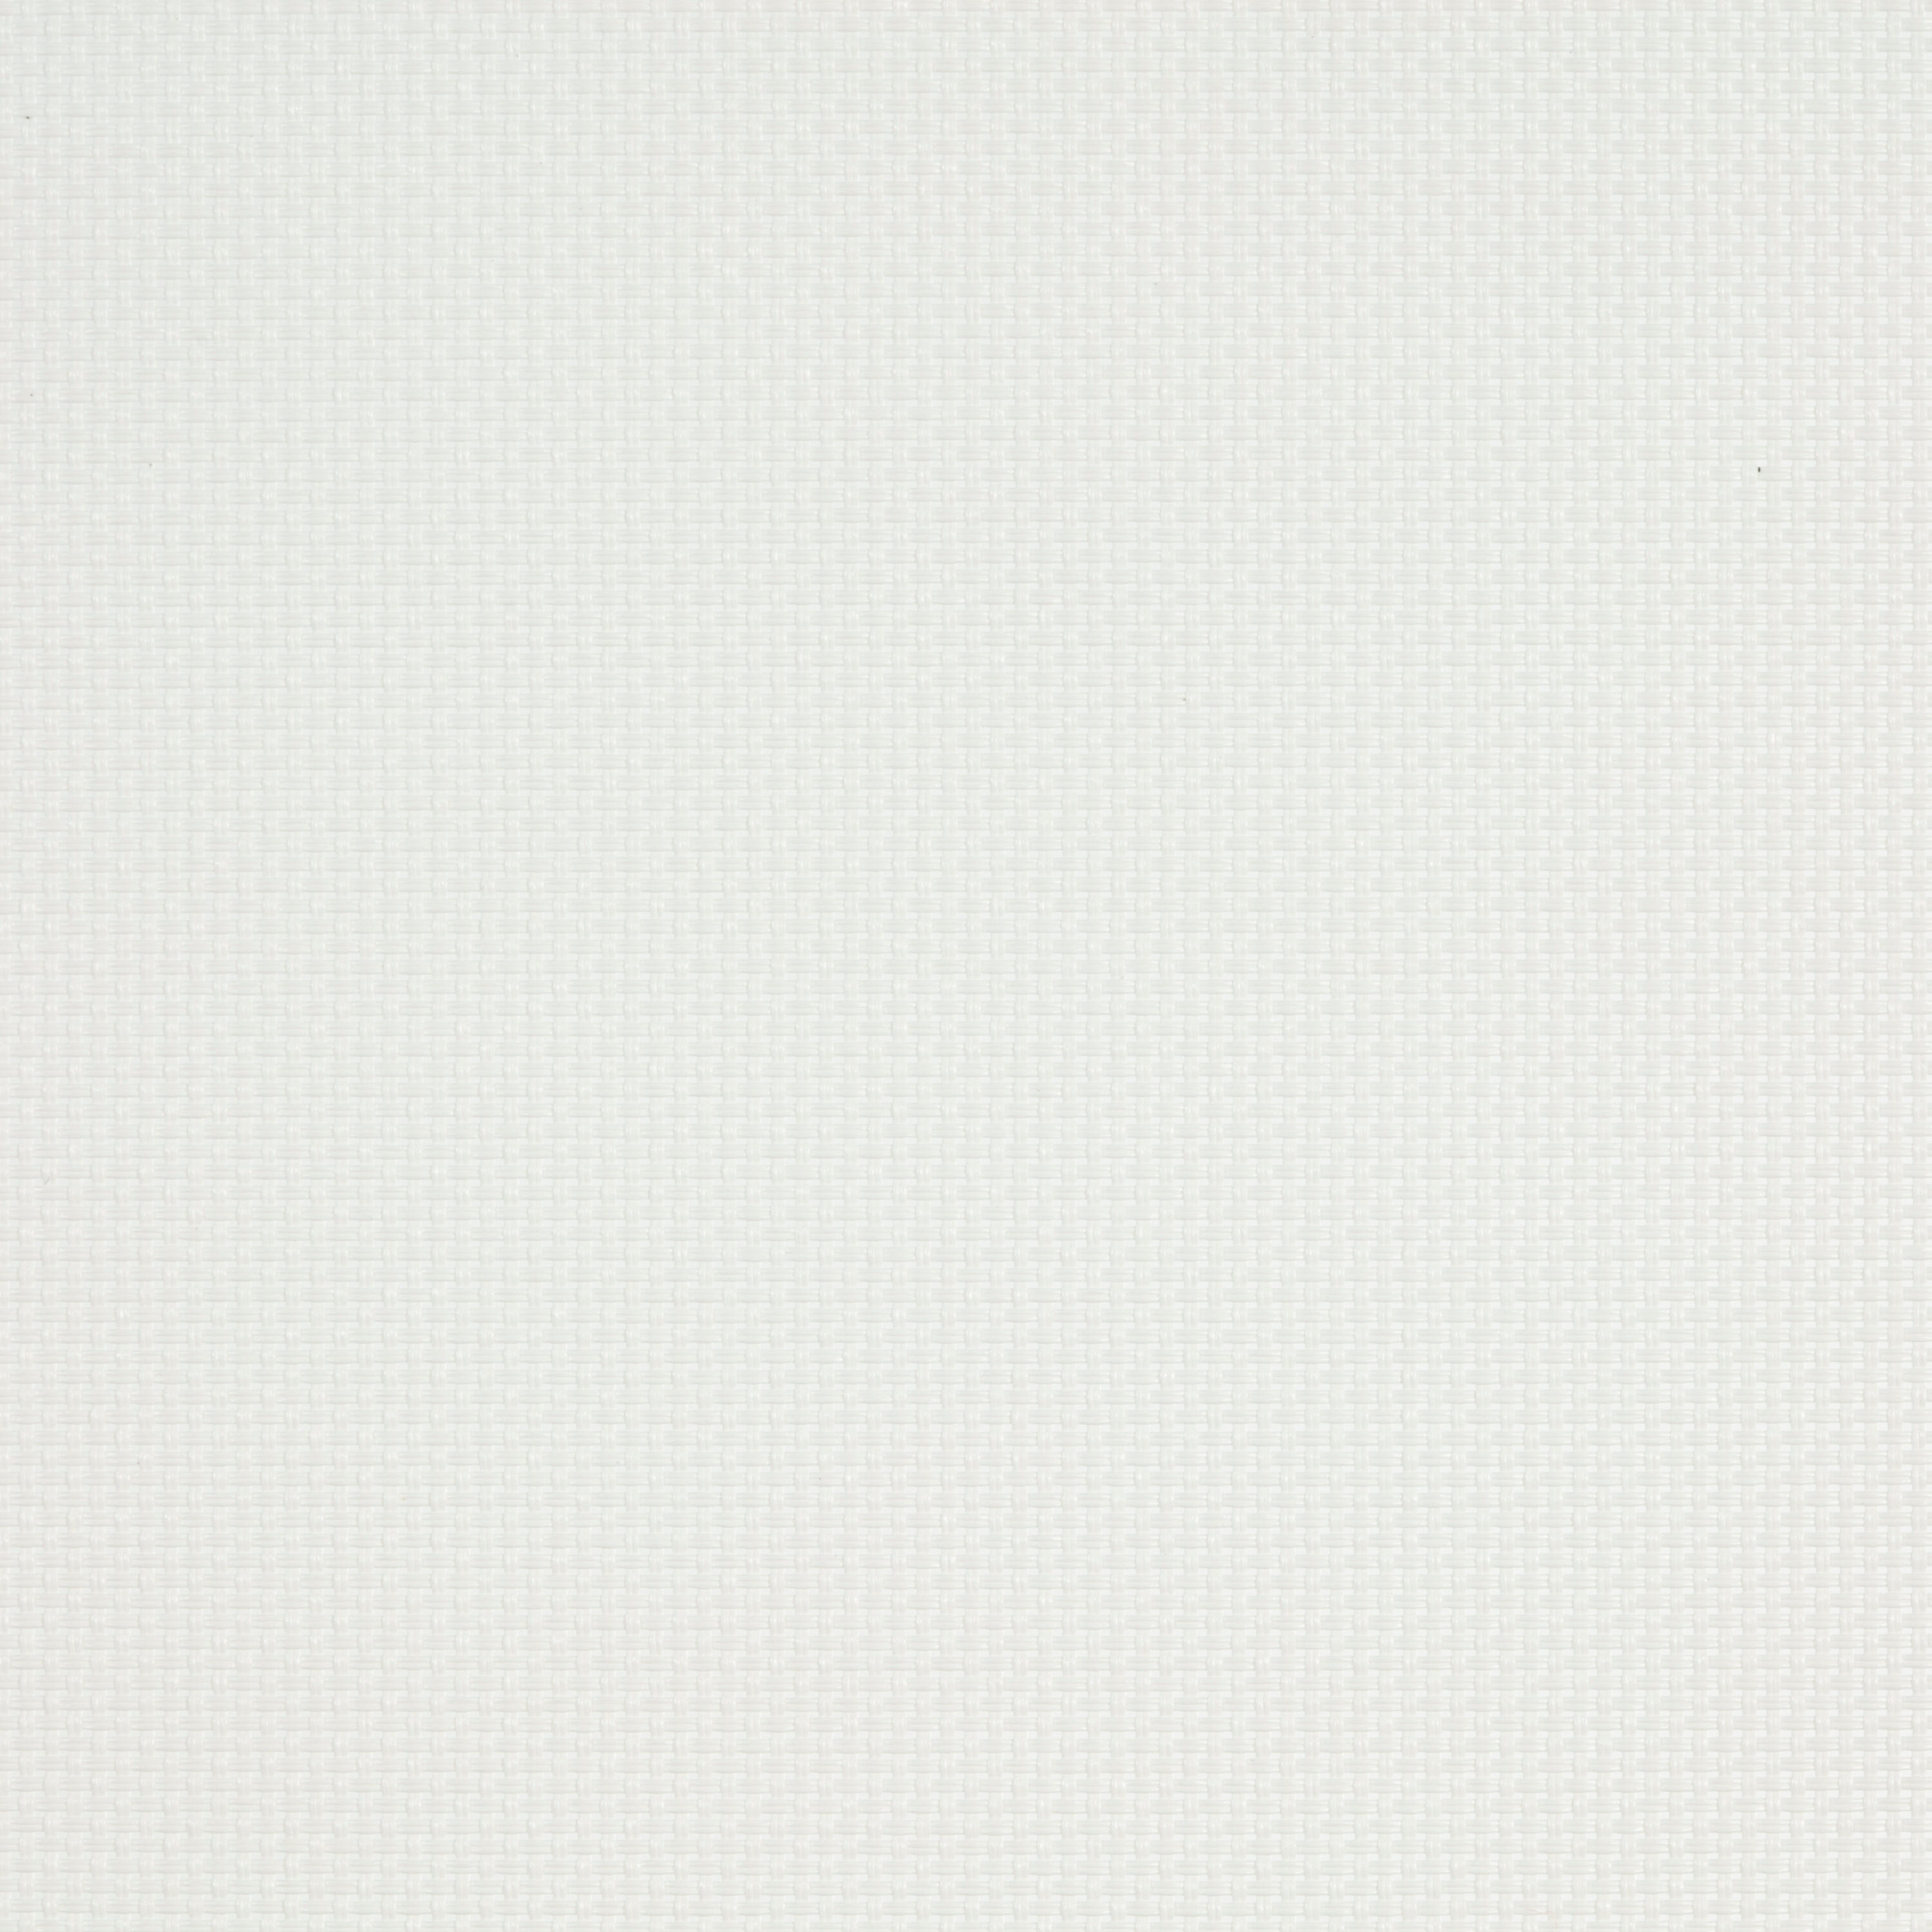 Tenda a rullo filtrante INSPIRE Brasilia bianco 105 x 250 cm - 7